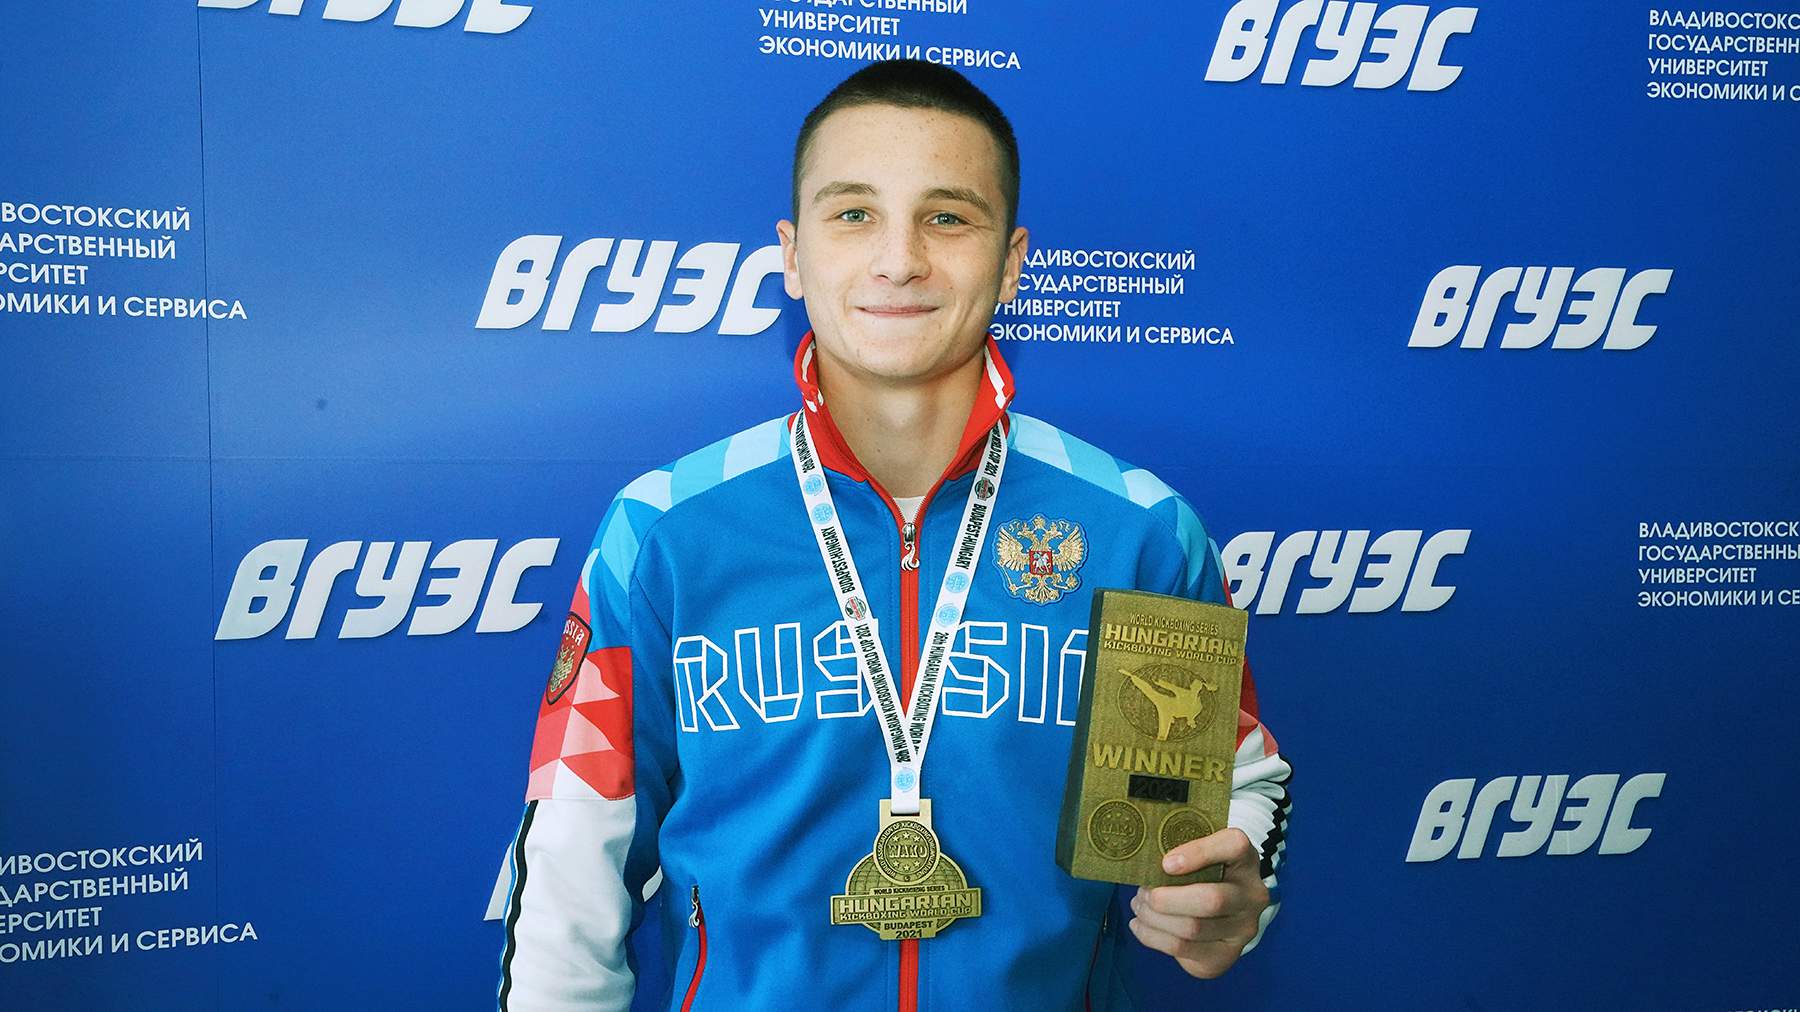 Студент Института физической культуры и спорта Александр Михайлюк получил звание Мастера спорта международного класса